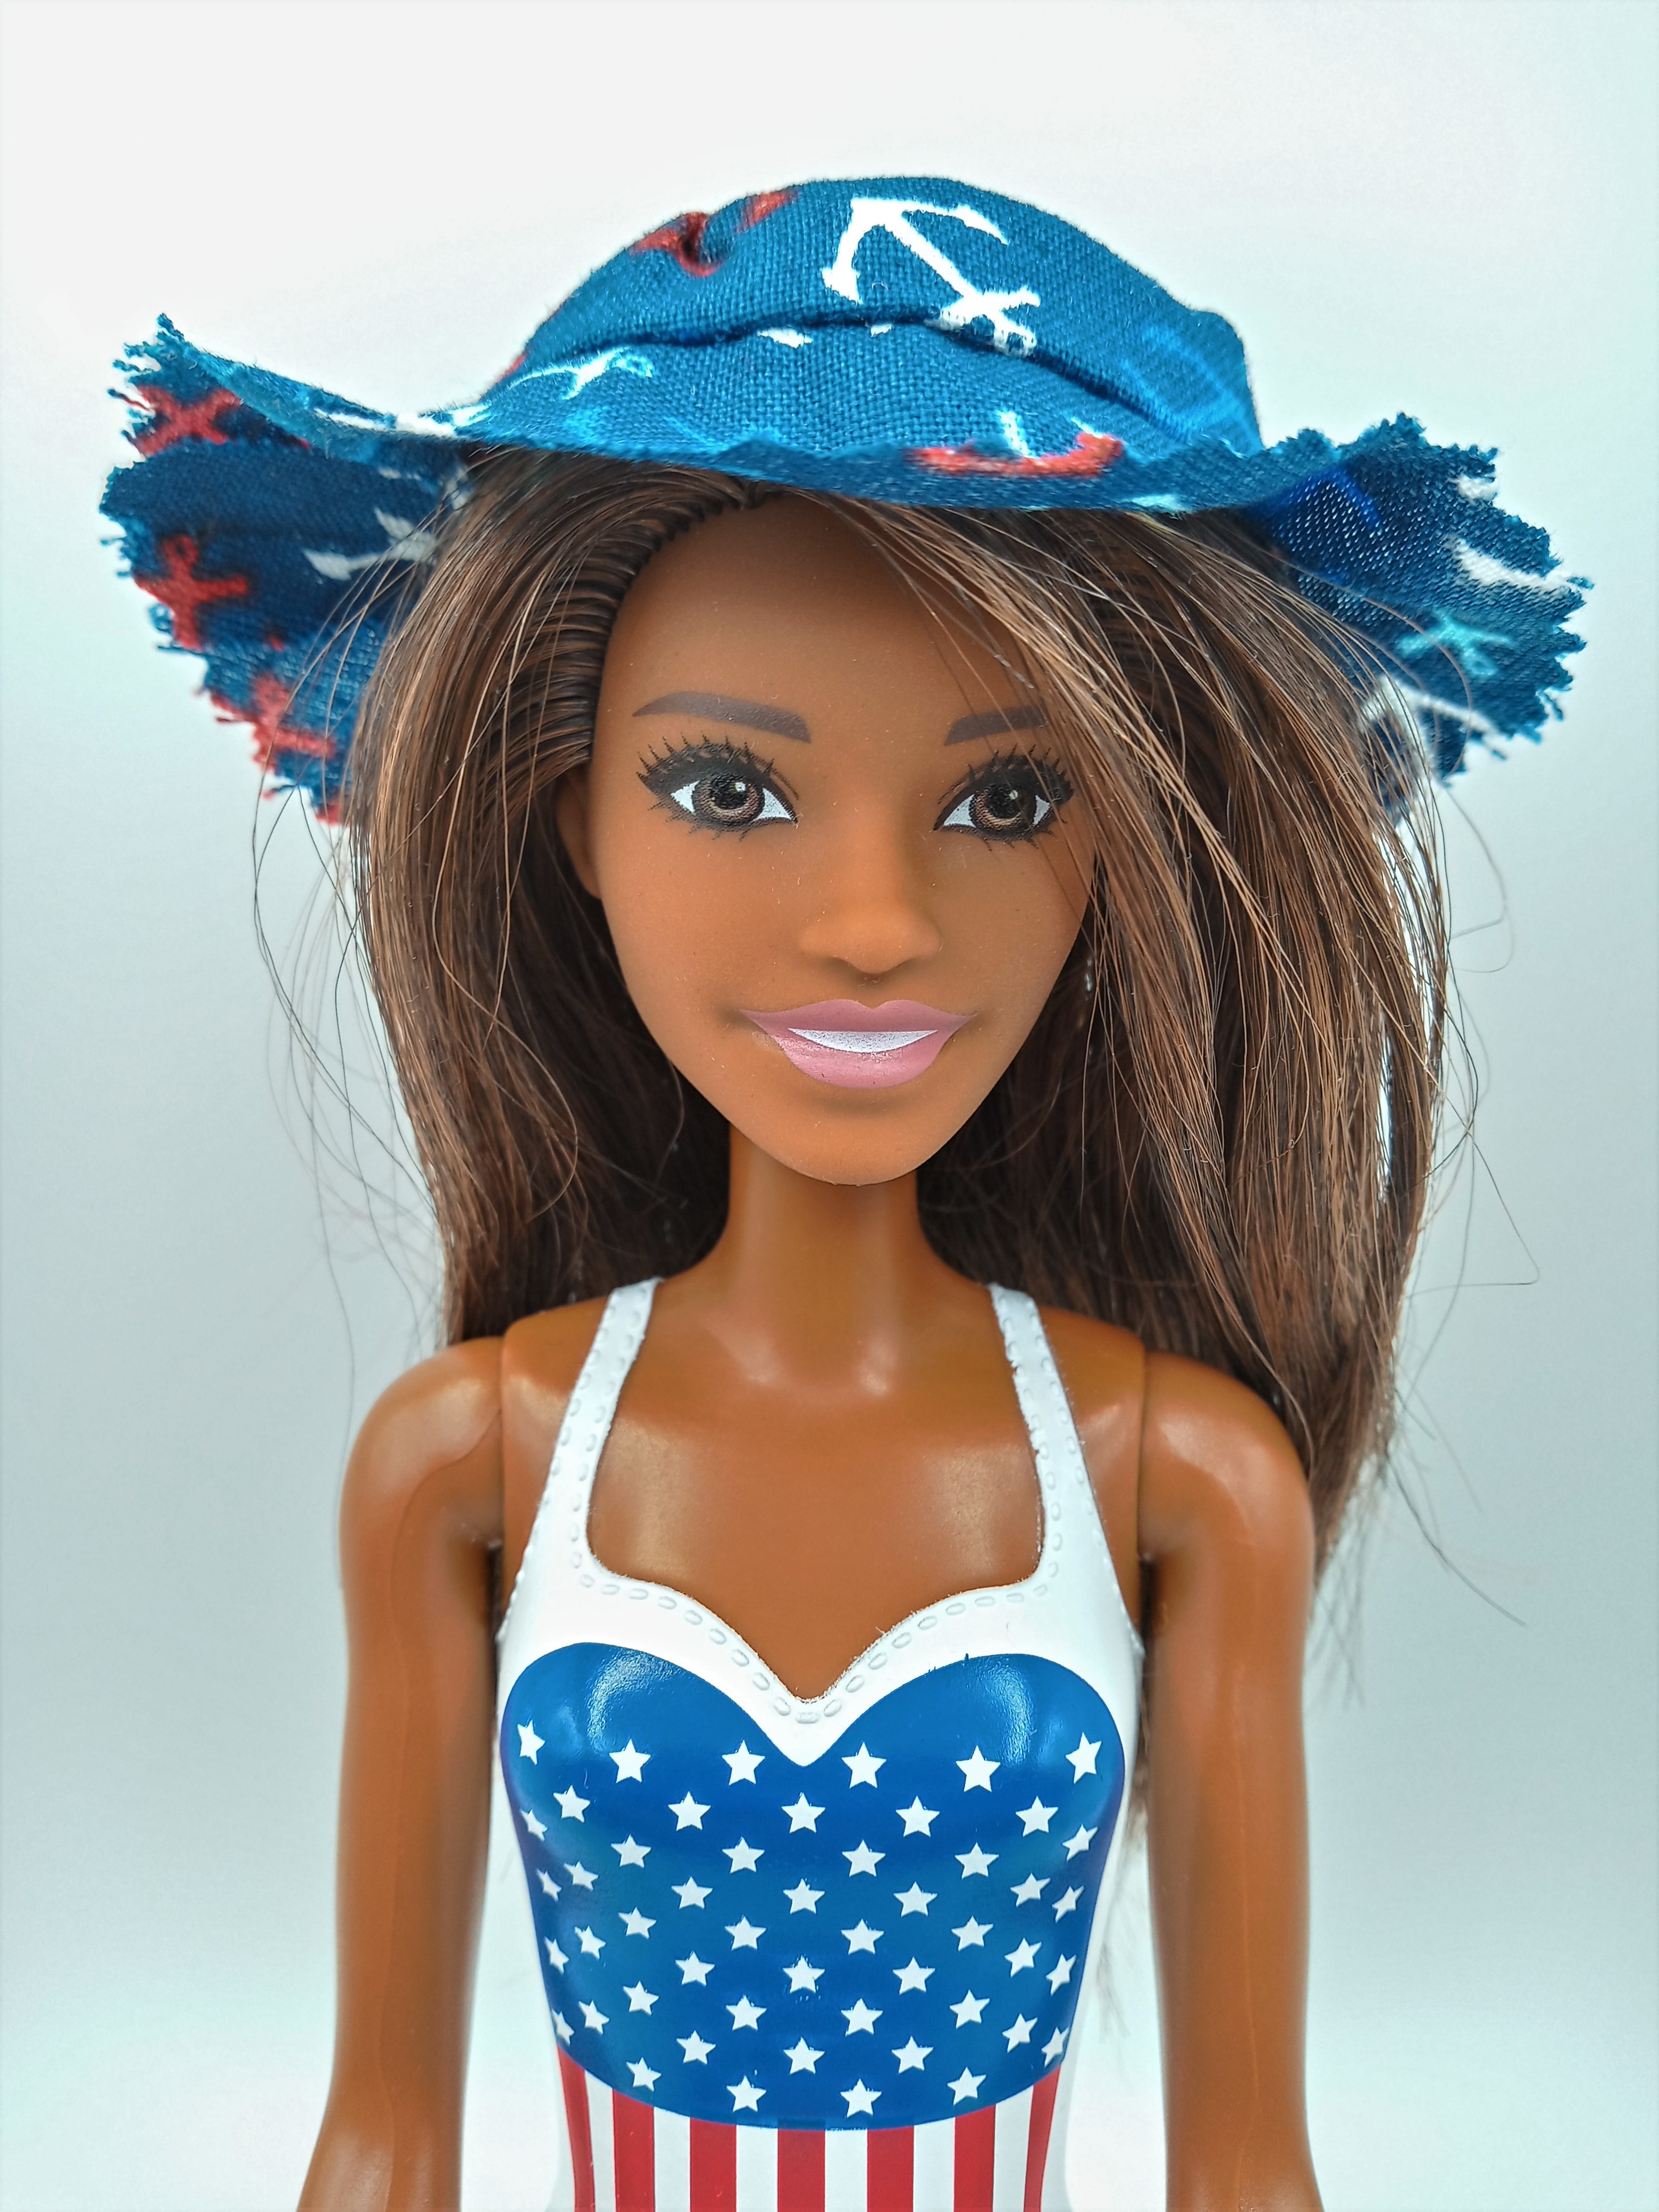 BARBIE BUCKET HAT for Women's 3D Printed Barbie Basin Hat Foldable Beach  Sun Hat $19.64 - PicClick AU